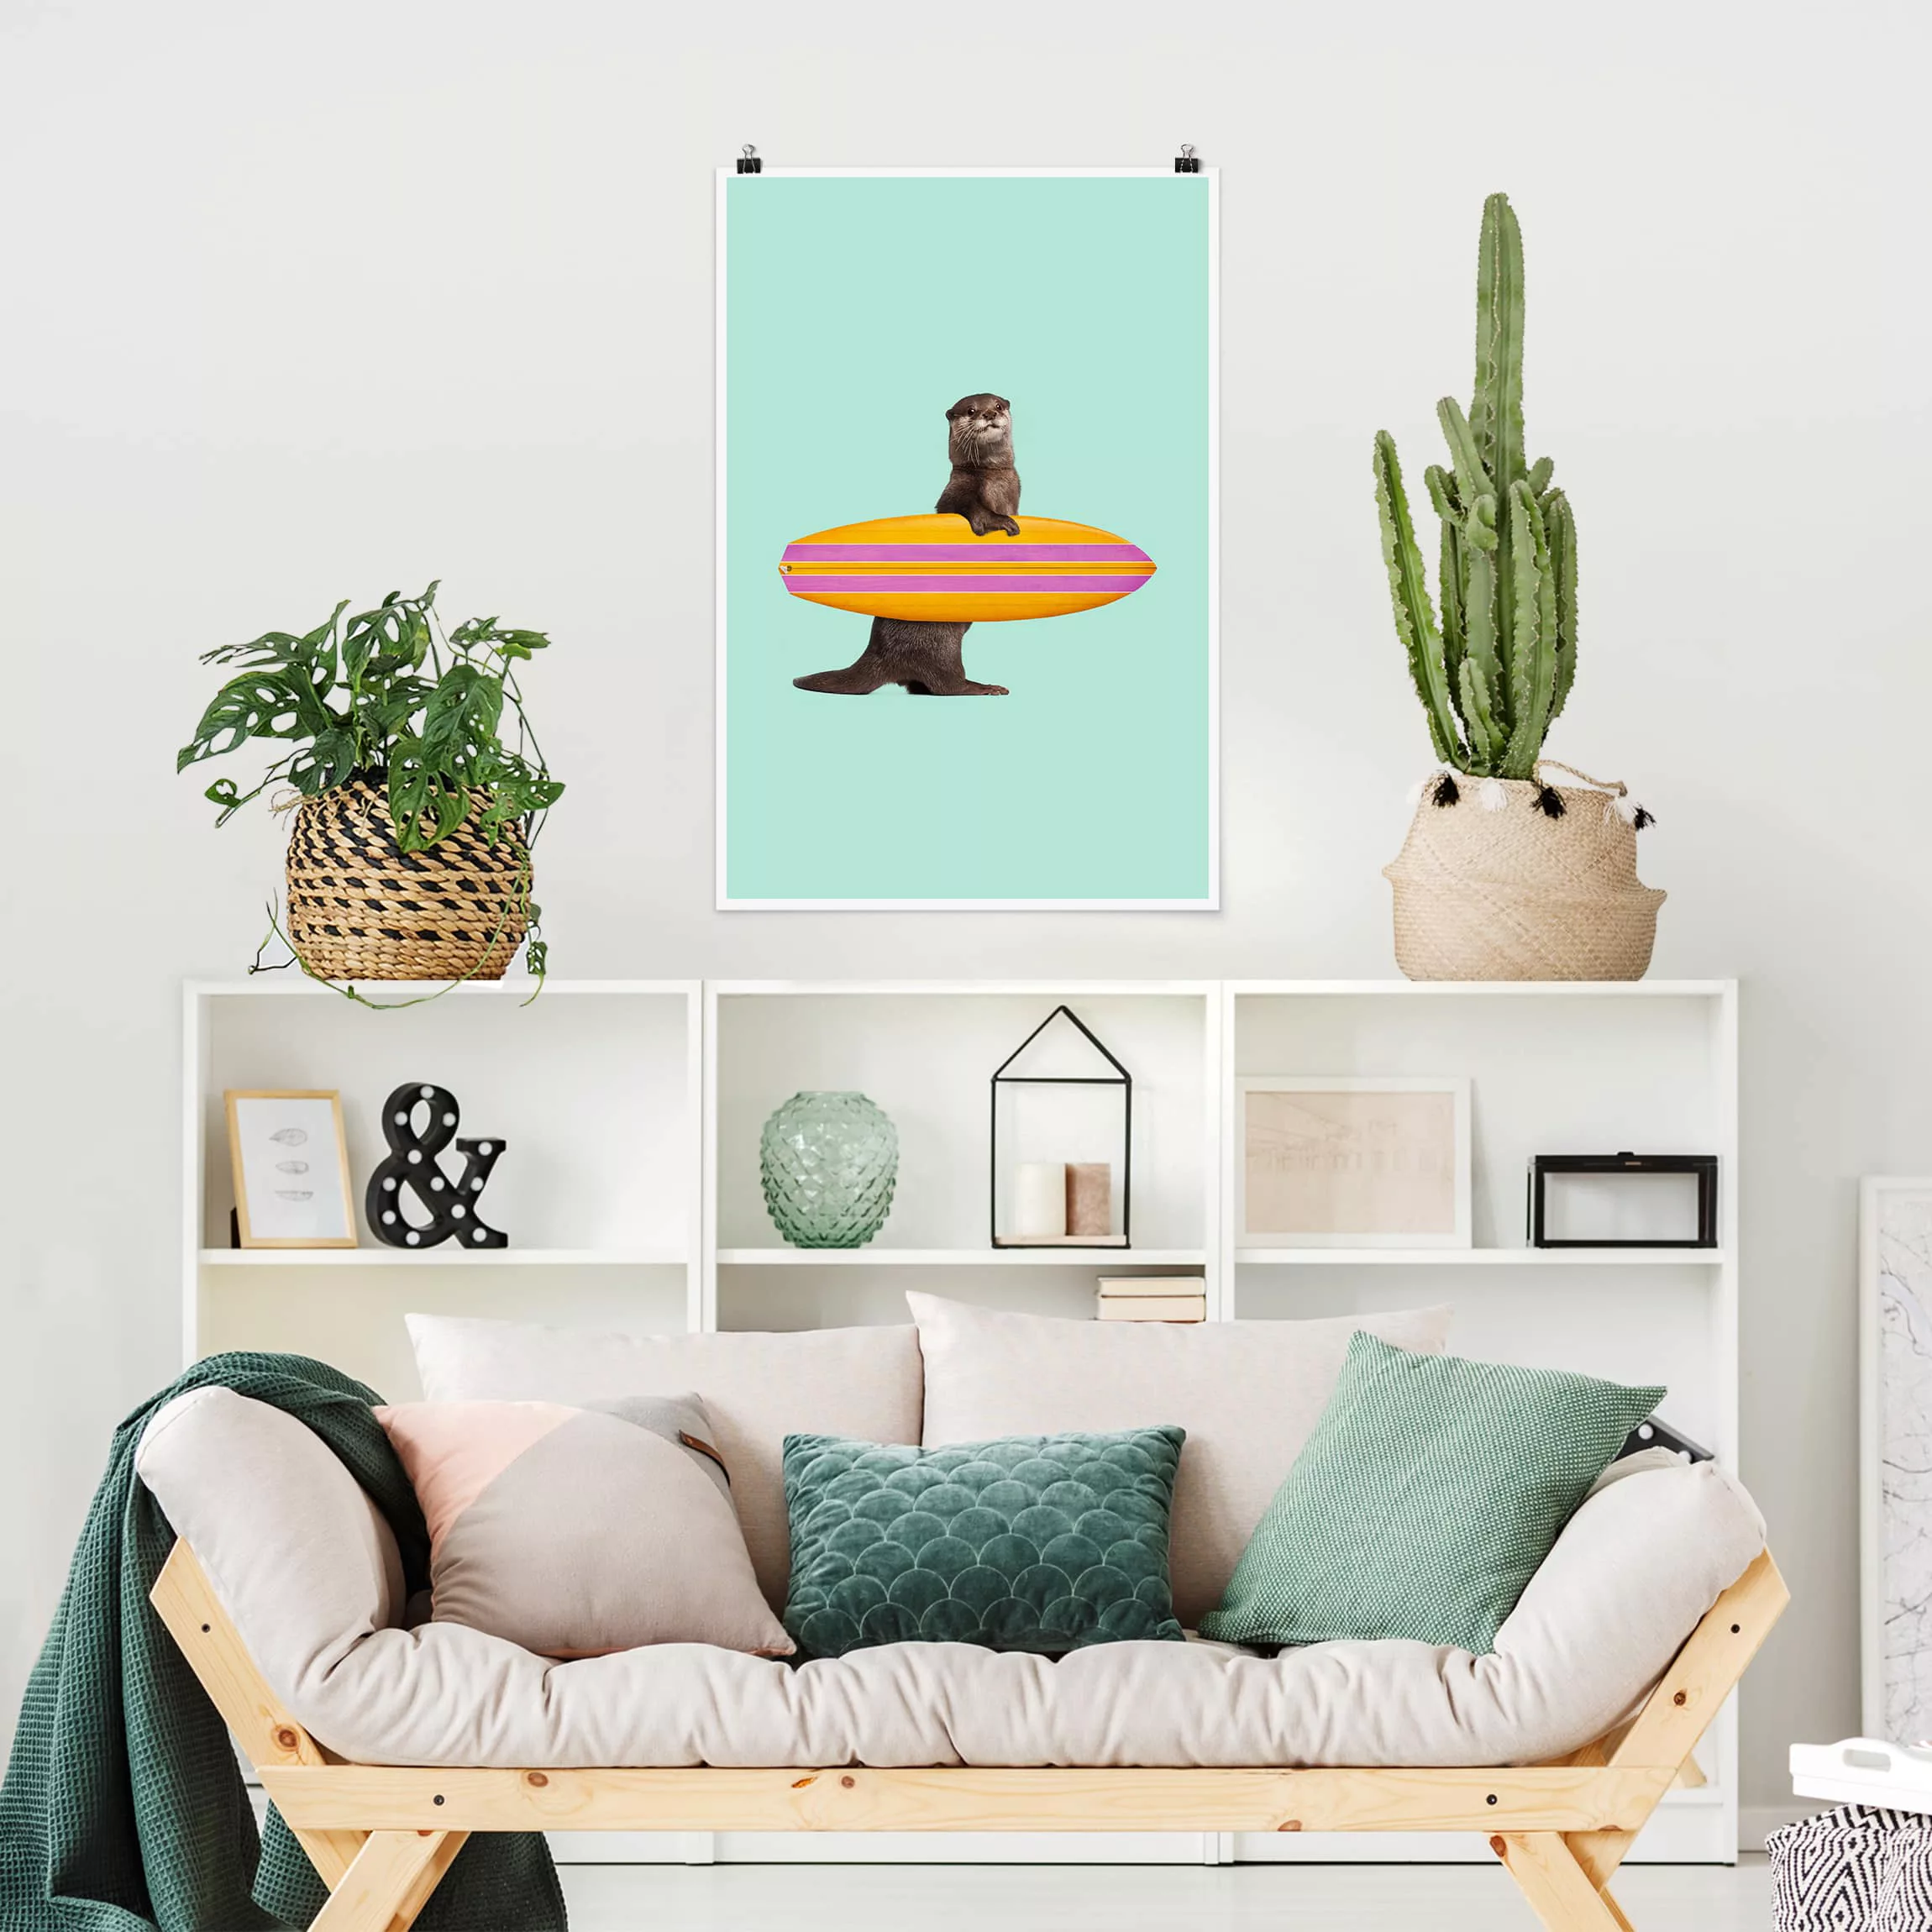 Poster Kunstdruck - Hochformat Otter mit Surfbrett günstig online kaufen